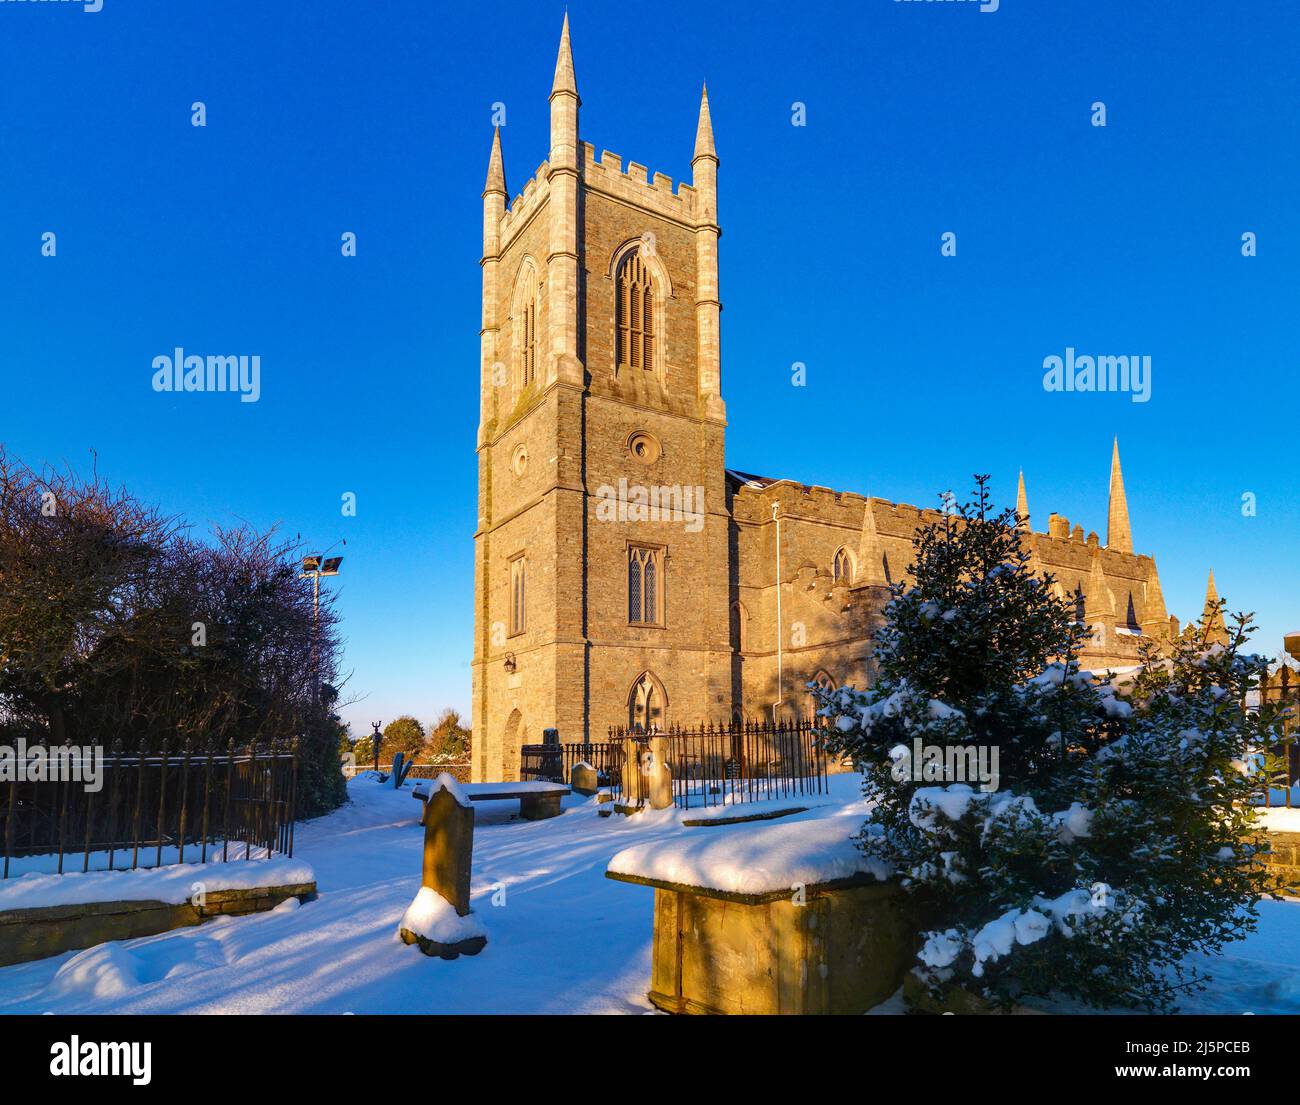 Chute de neige à la cathédrale de Downpatrick, comté en bas, Irlande du Nord Banque D'Images